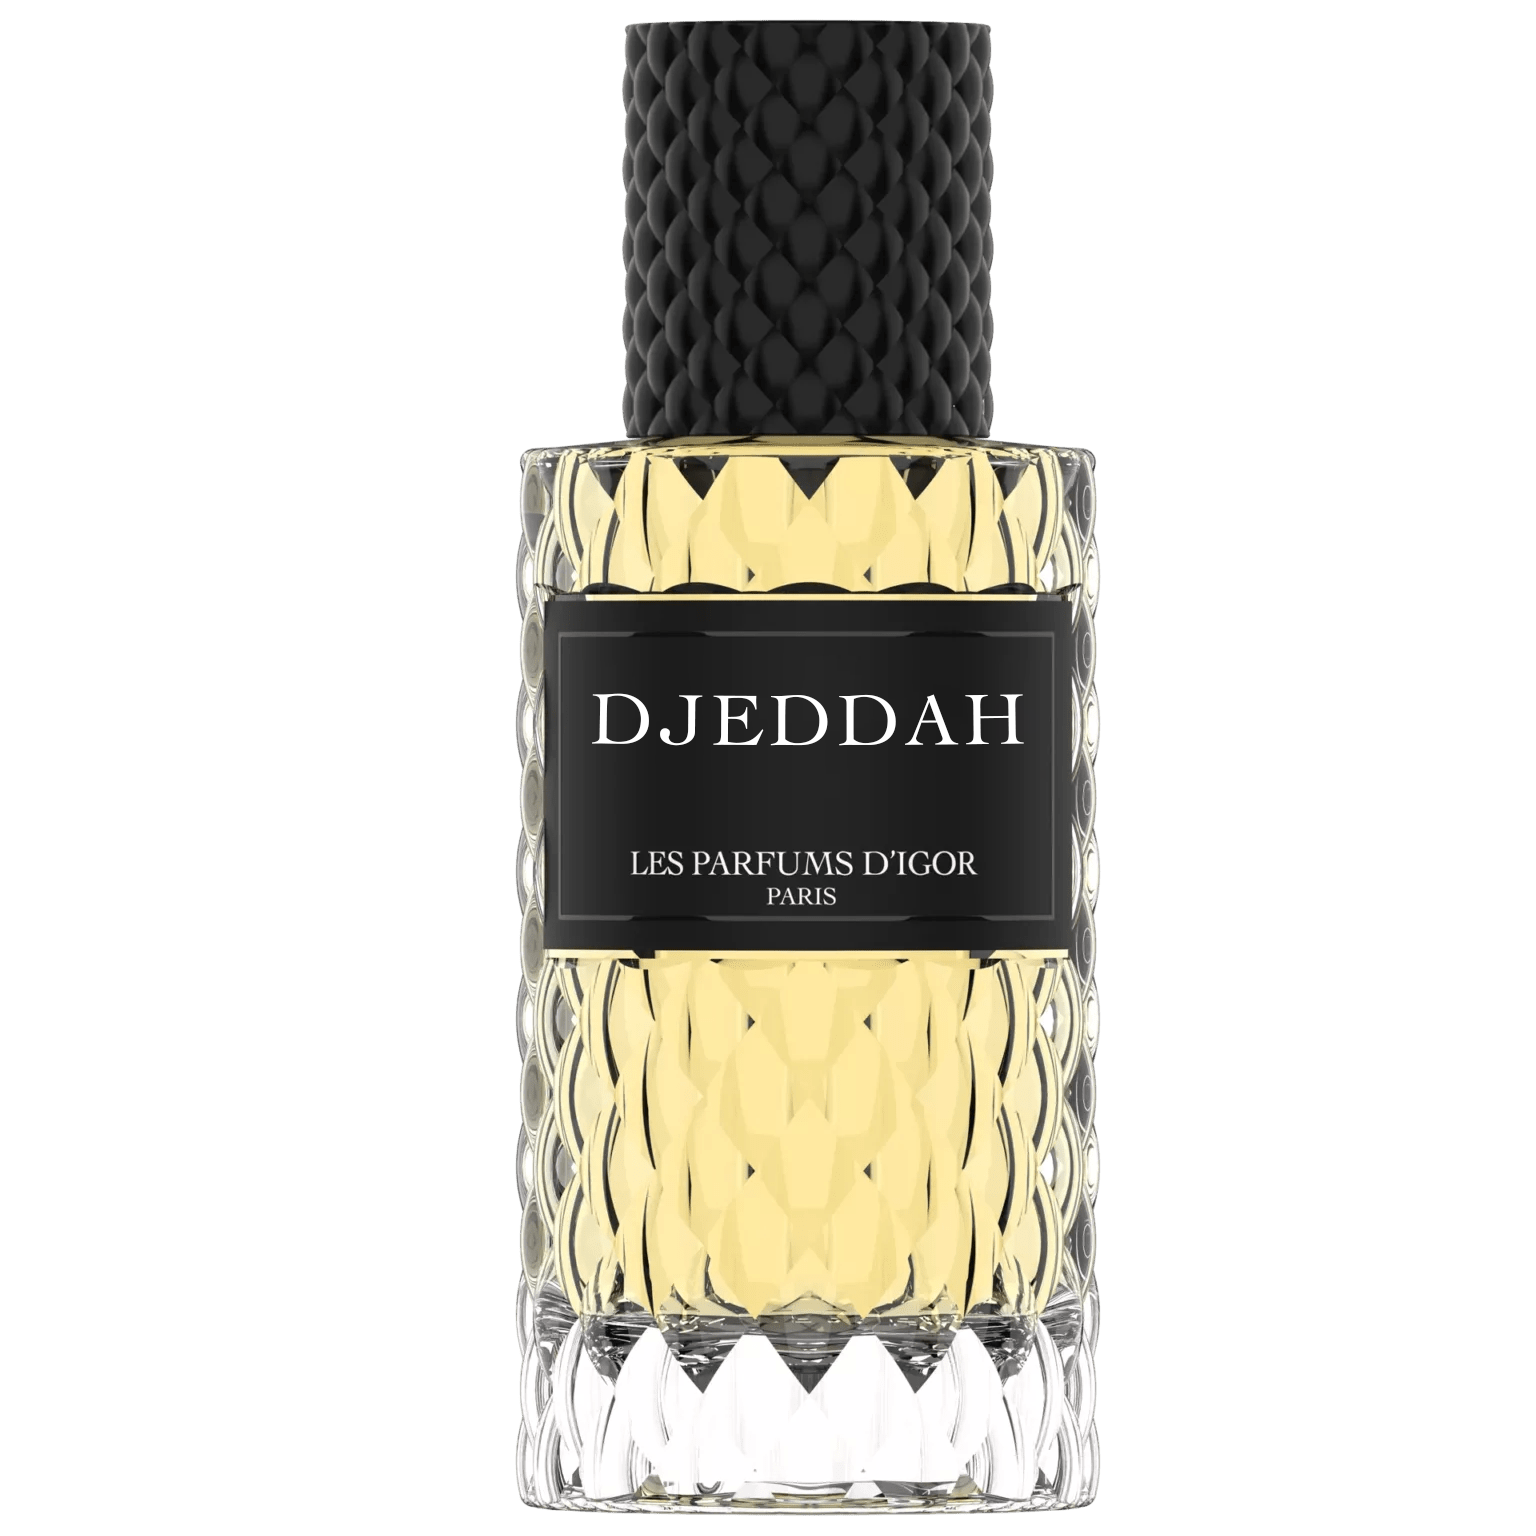 Djeddah - Les parfums d'Igor